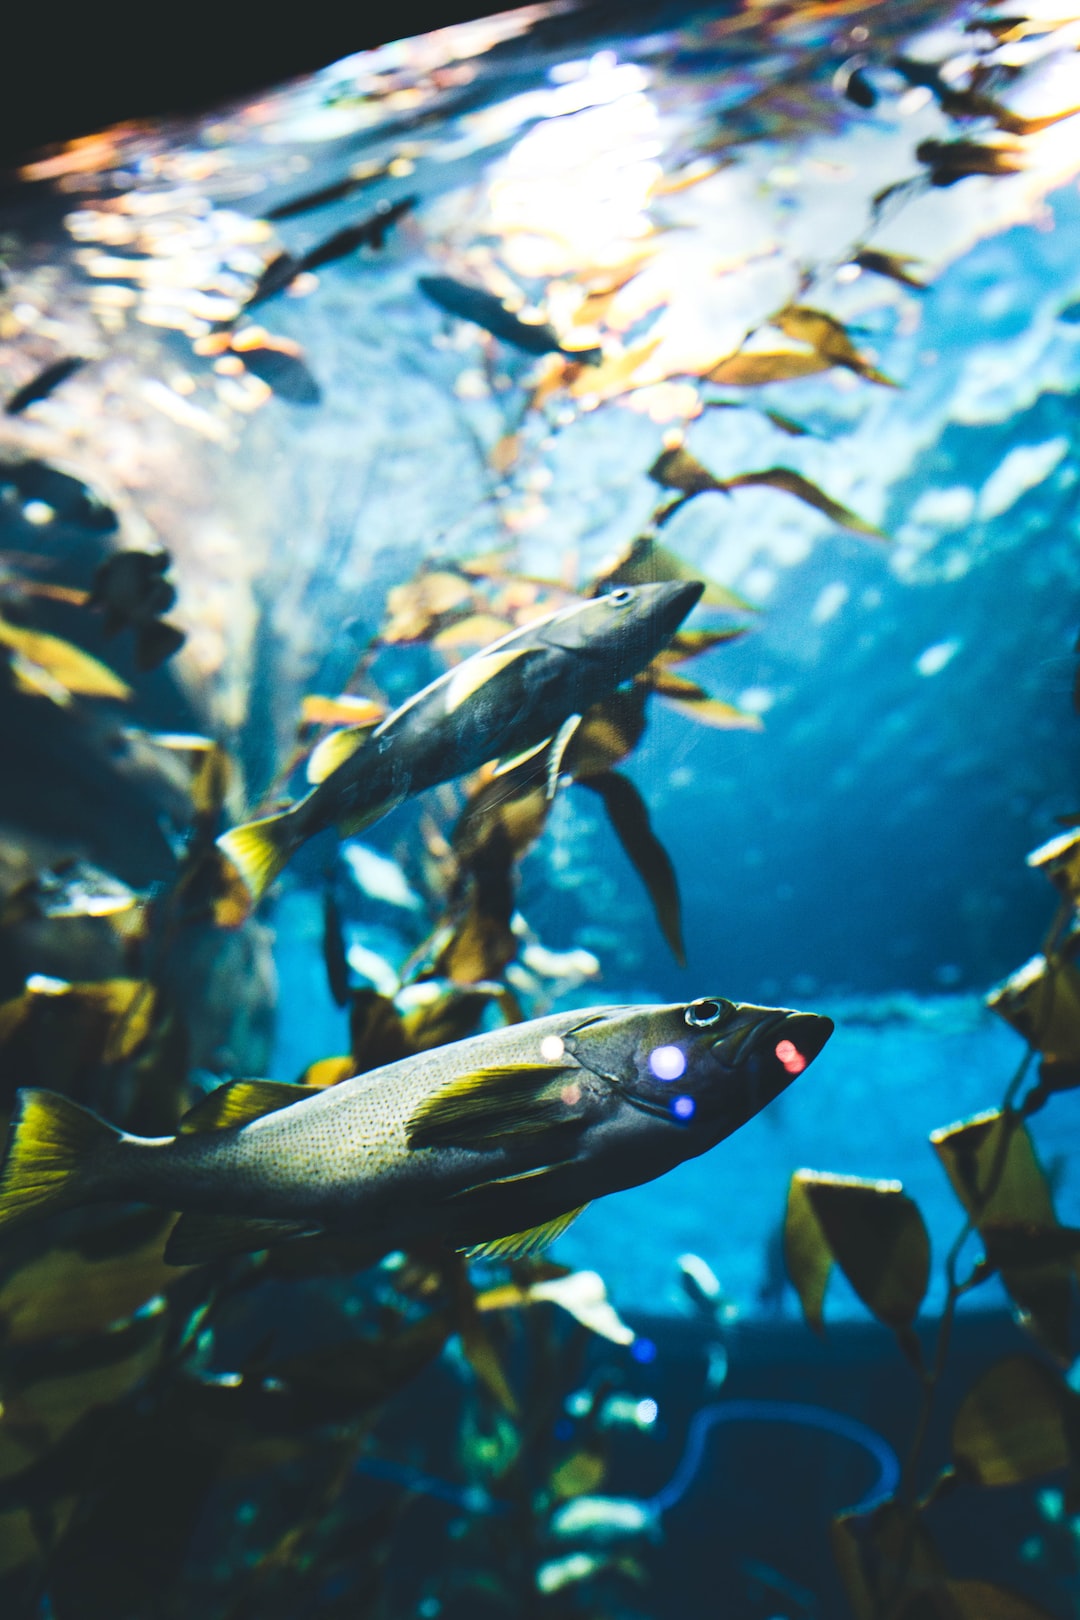 25 wichtige Fragen zu Braunalgen Aquarium Einlaufphase